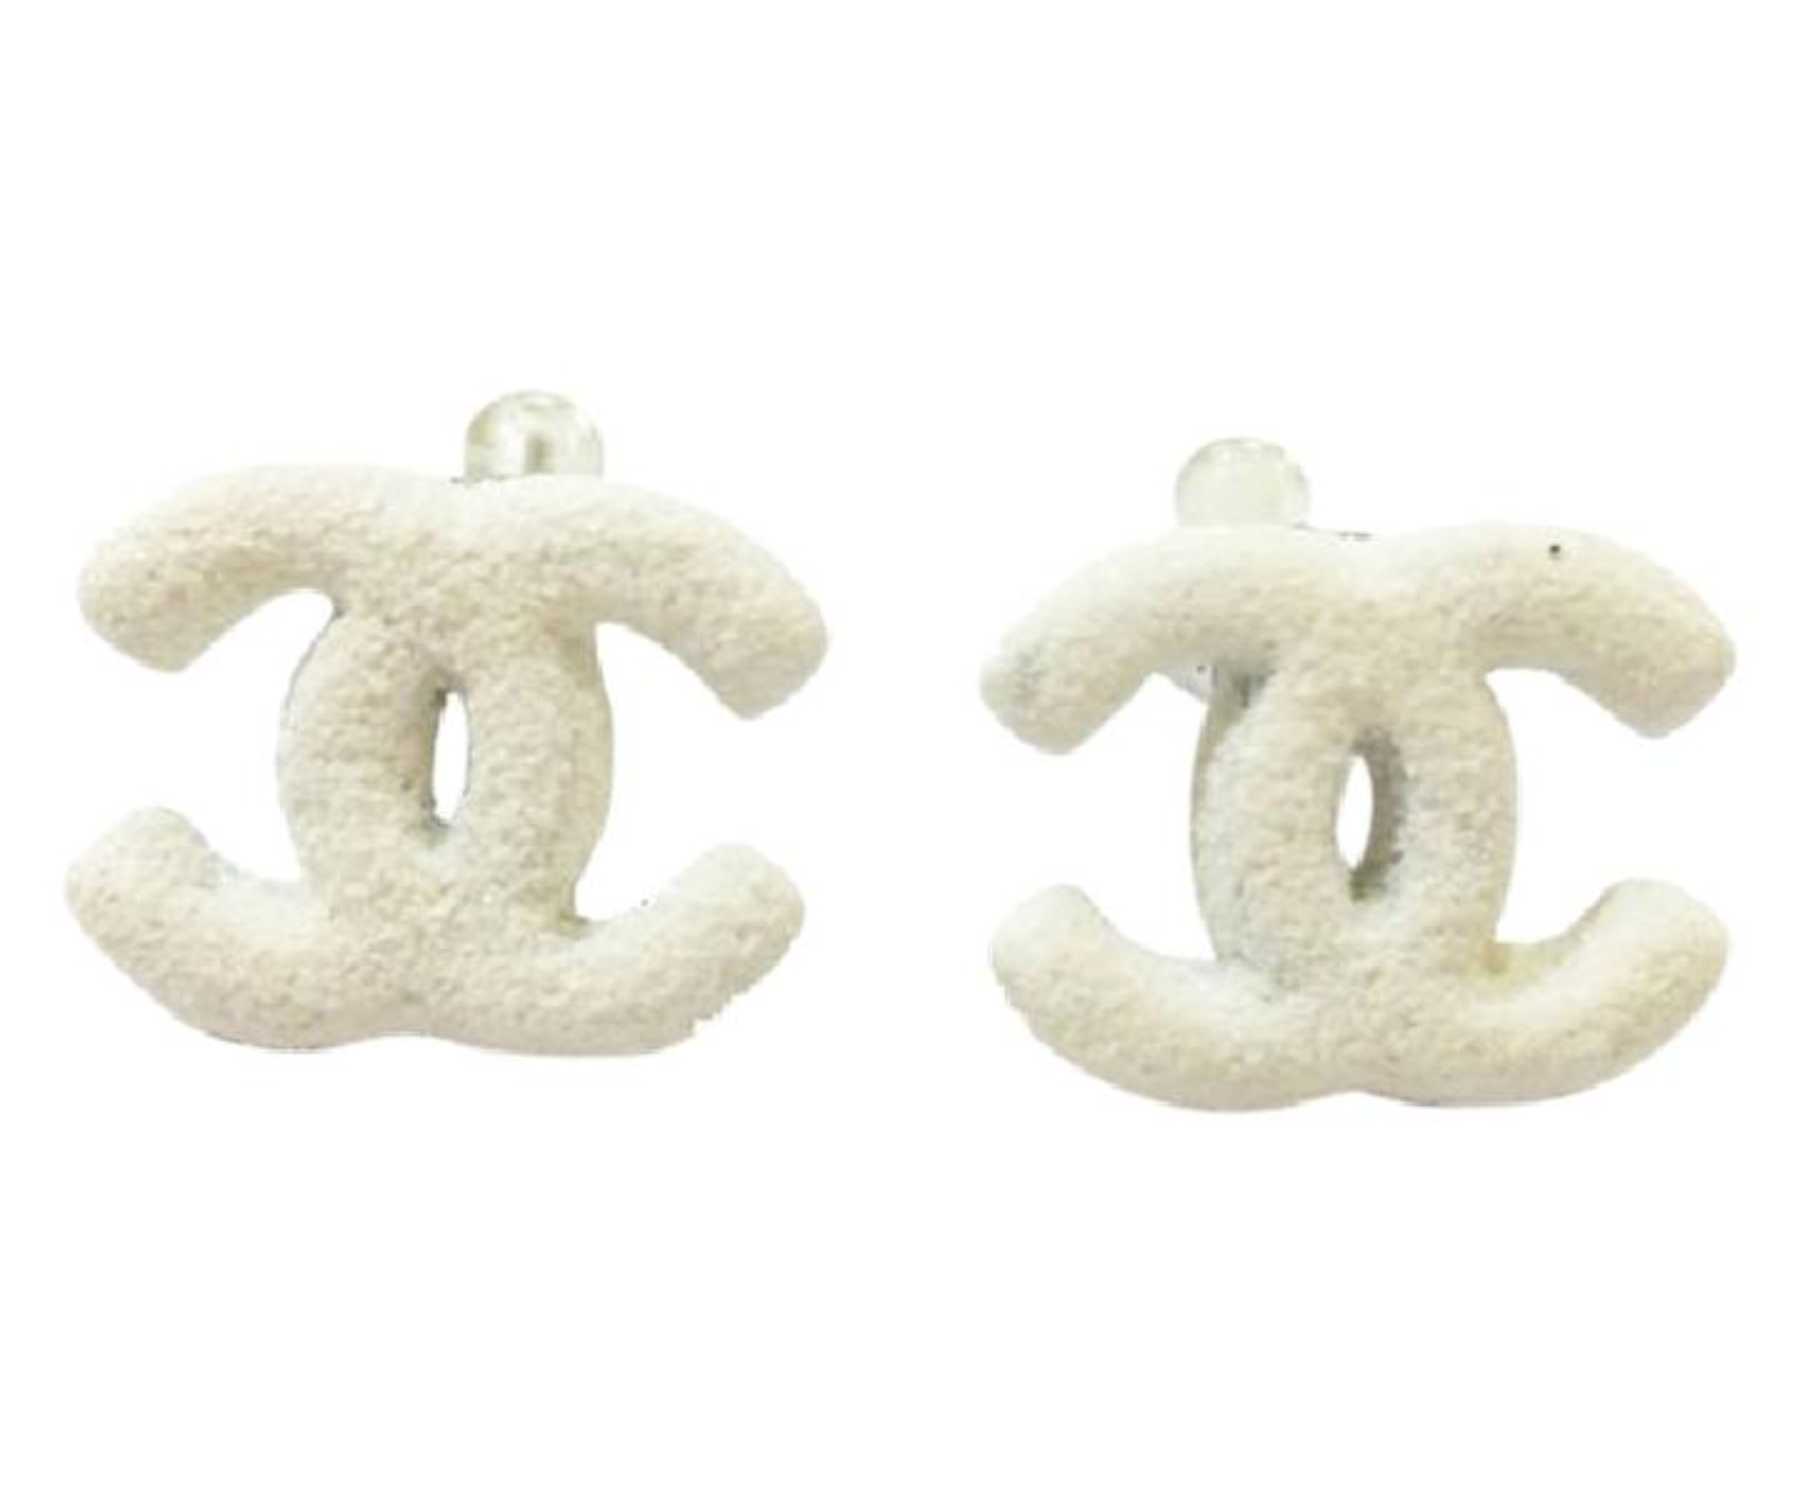 Cc earrings Chanel White in Metal - 27521419